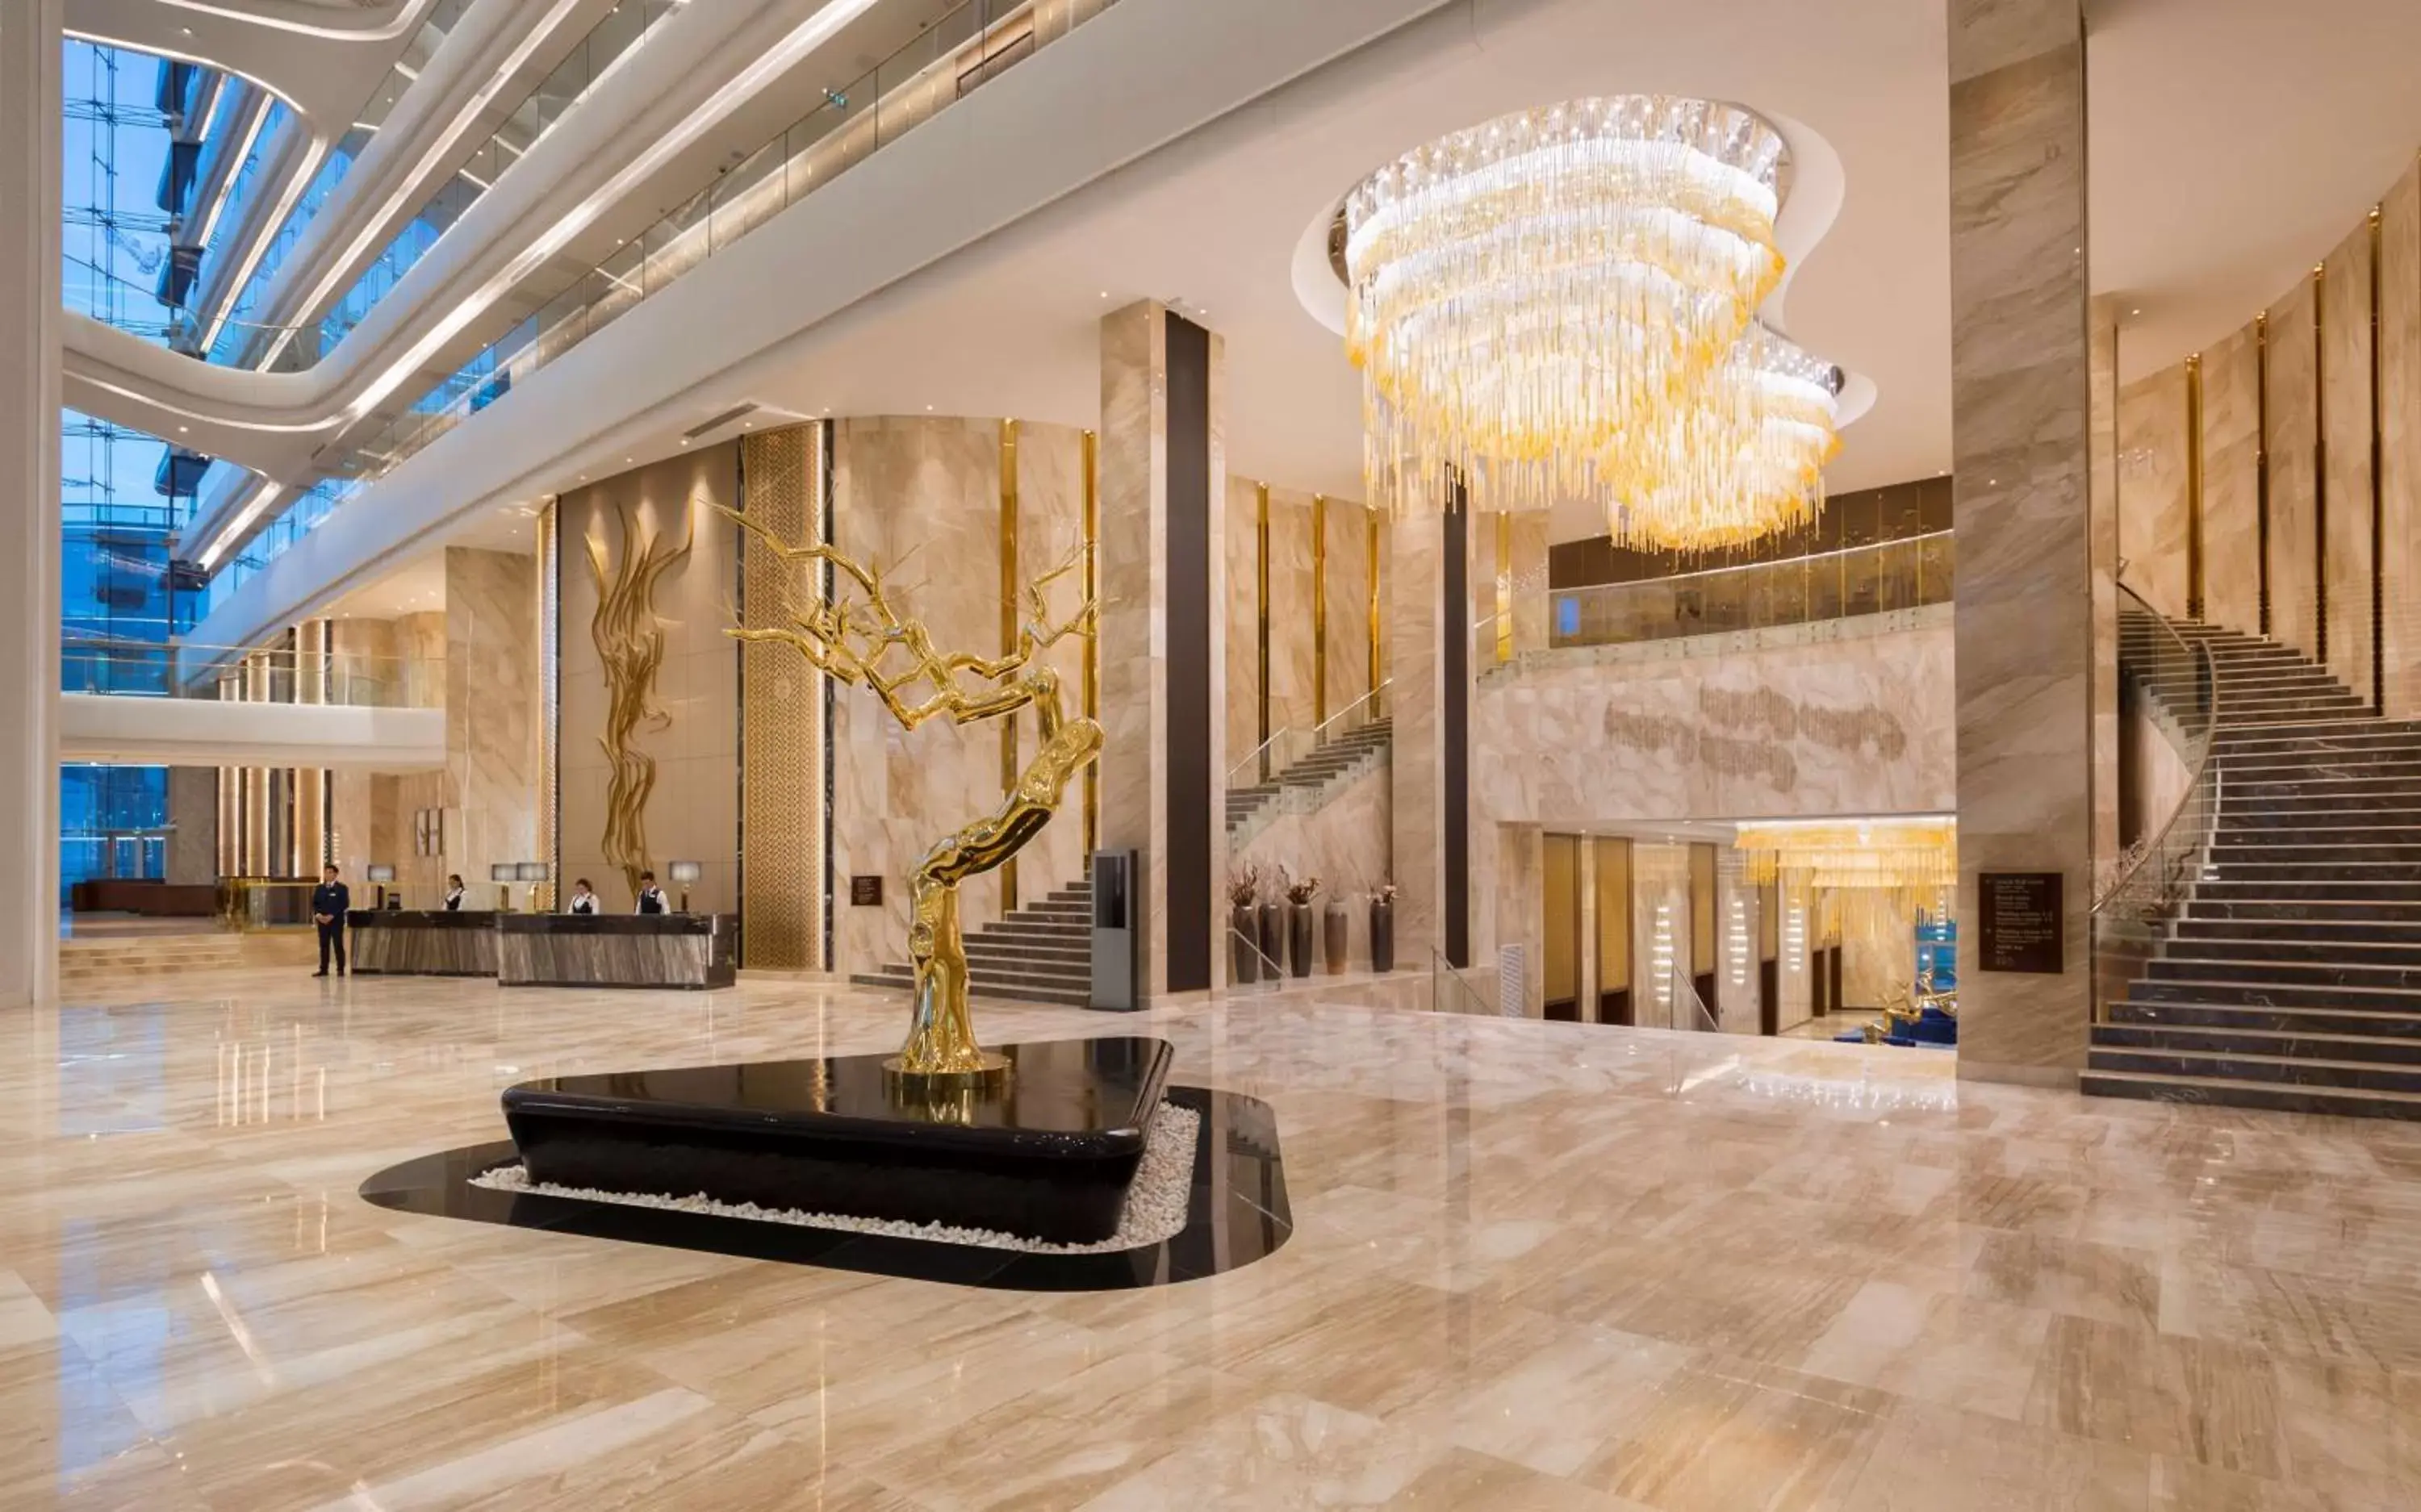 Lobby or reception in Hilton Astana